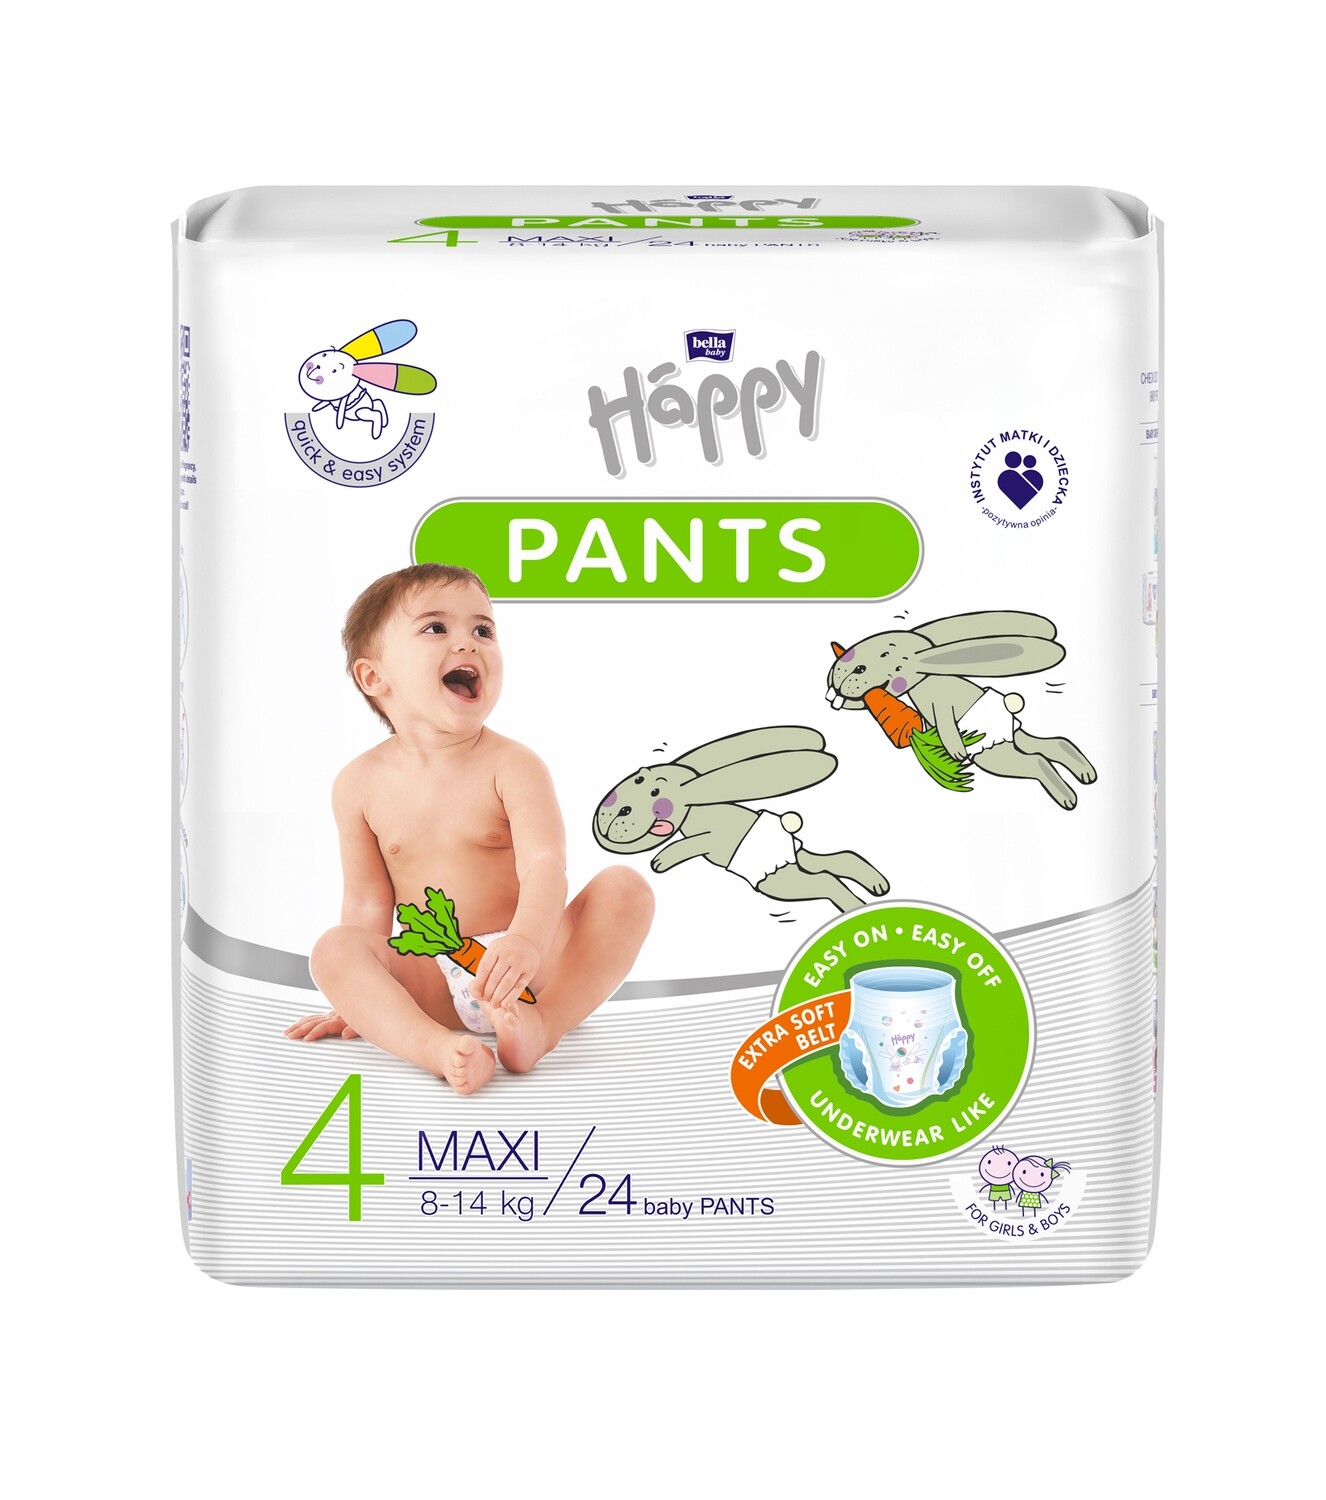 PANTS HAPPY - TG 4 MAXI - 8-14 KG - 24 pz